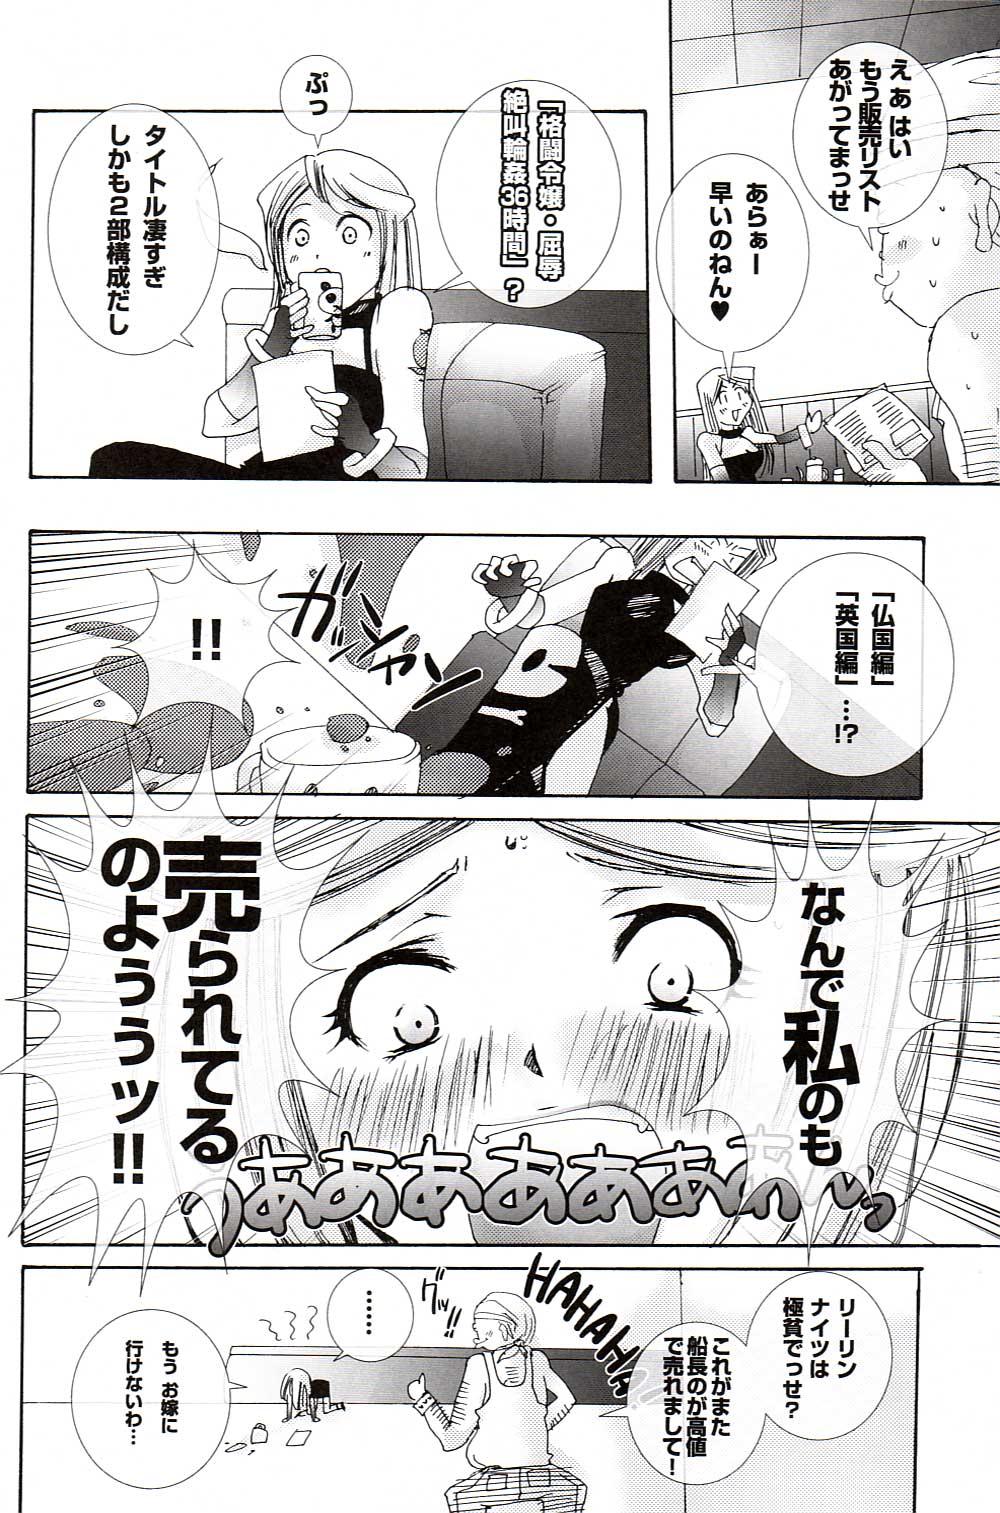 Playing Kaizoku Kizoku - King of fighters Bathroom - Page 21